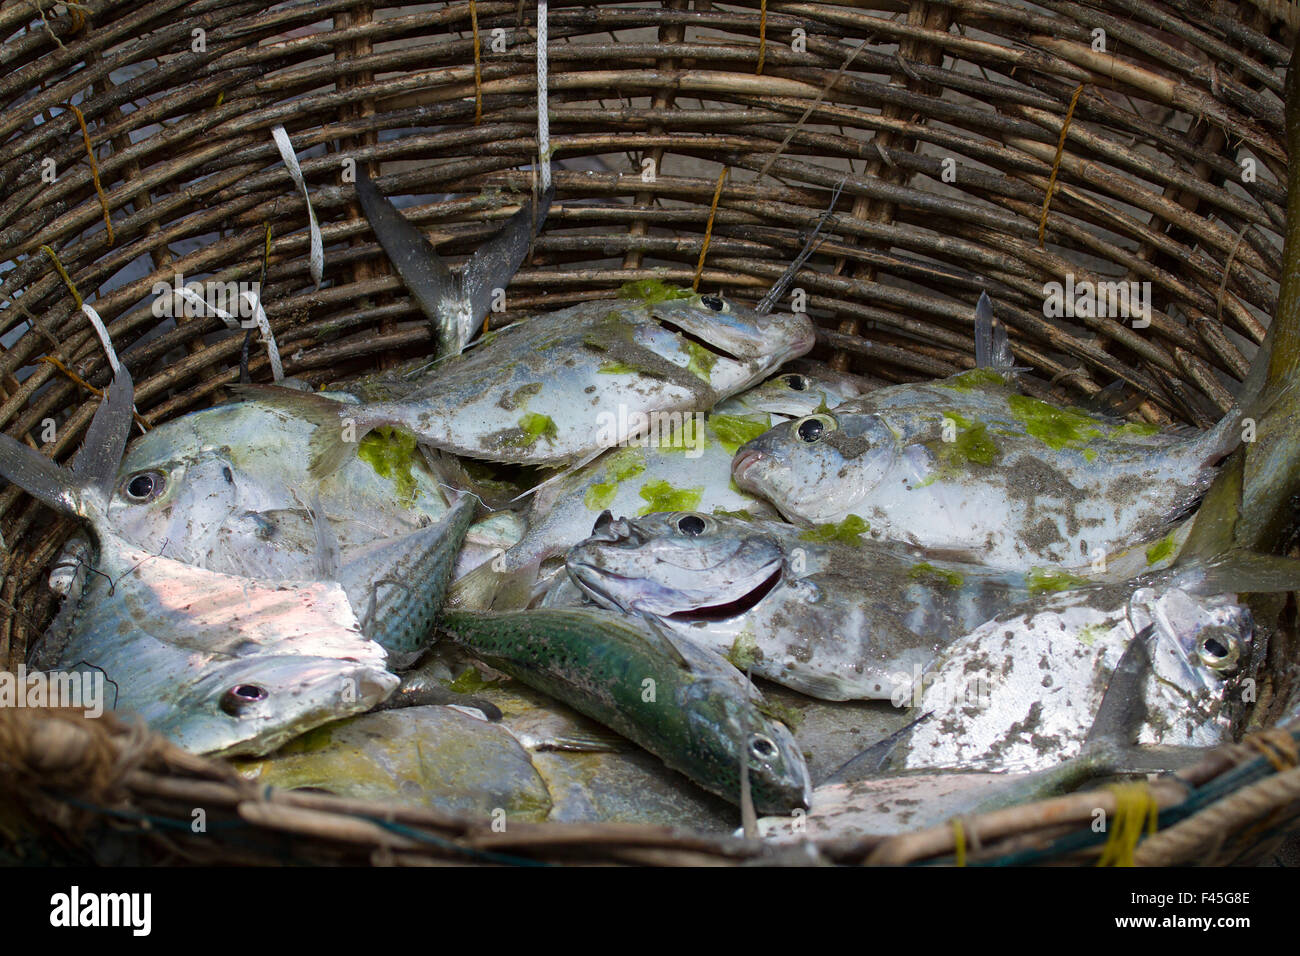 Les prises de poissons frais dans le panier traditionnel au Sri Lanka Banque D'Images